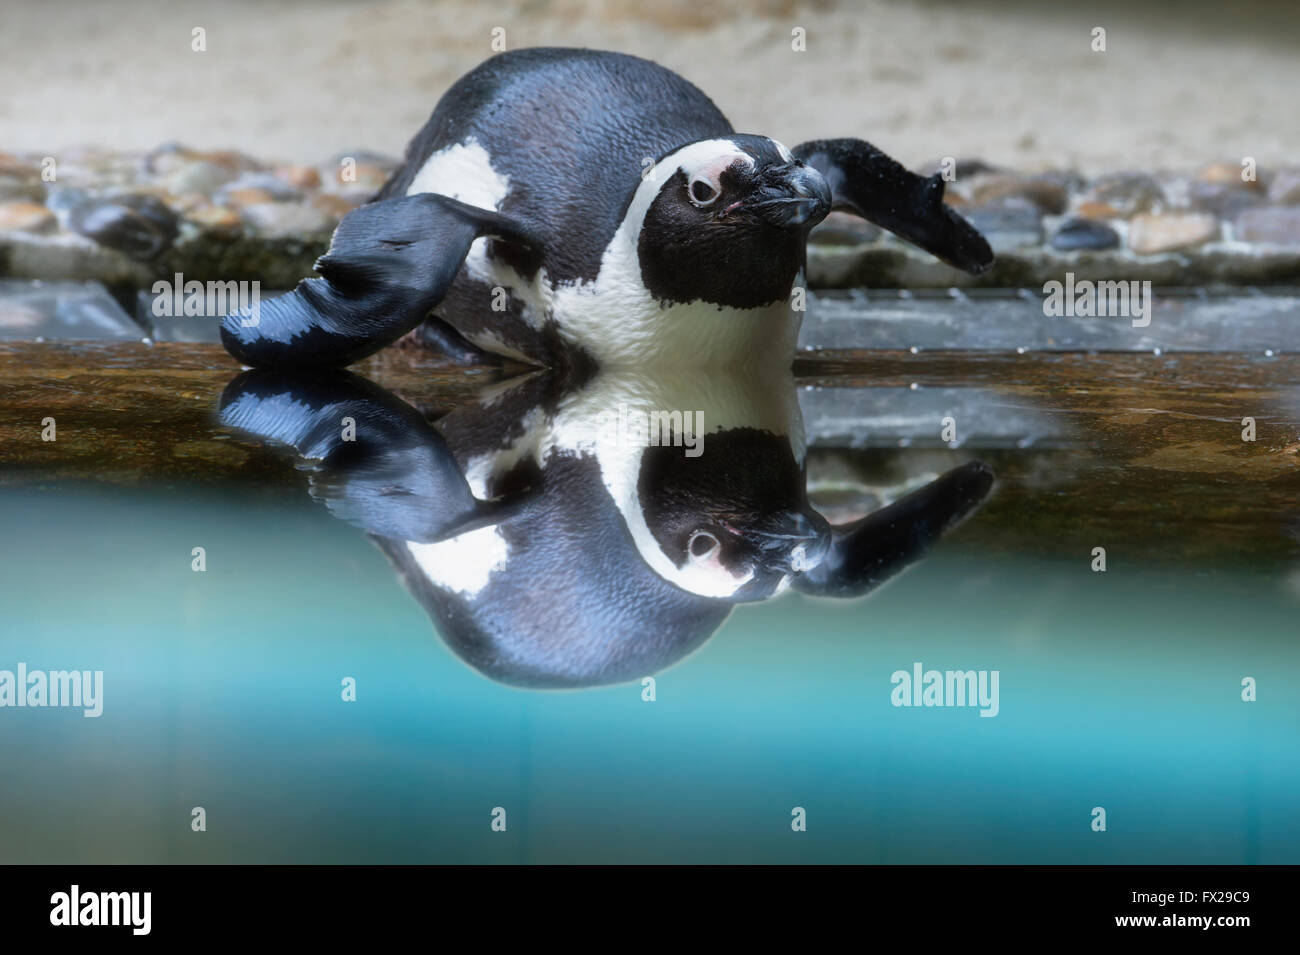 Afrikanische Pinguin oder Jackass Pinguin (Spheniscus Demersus) im Wasser reflektiert Stockfoto